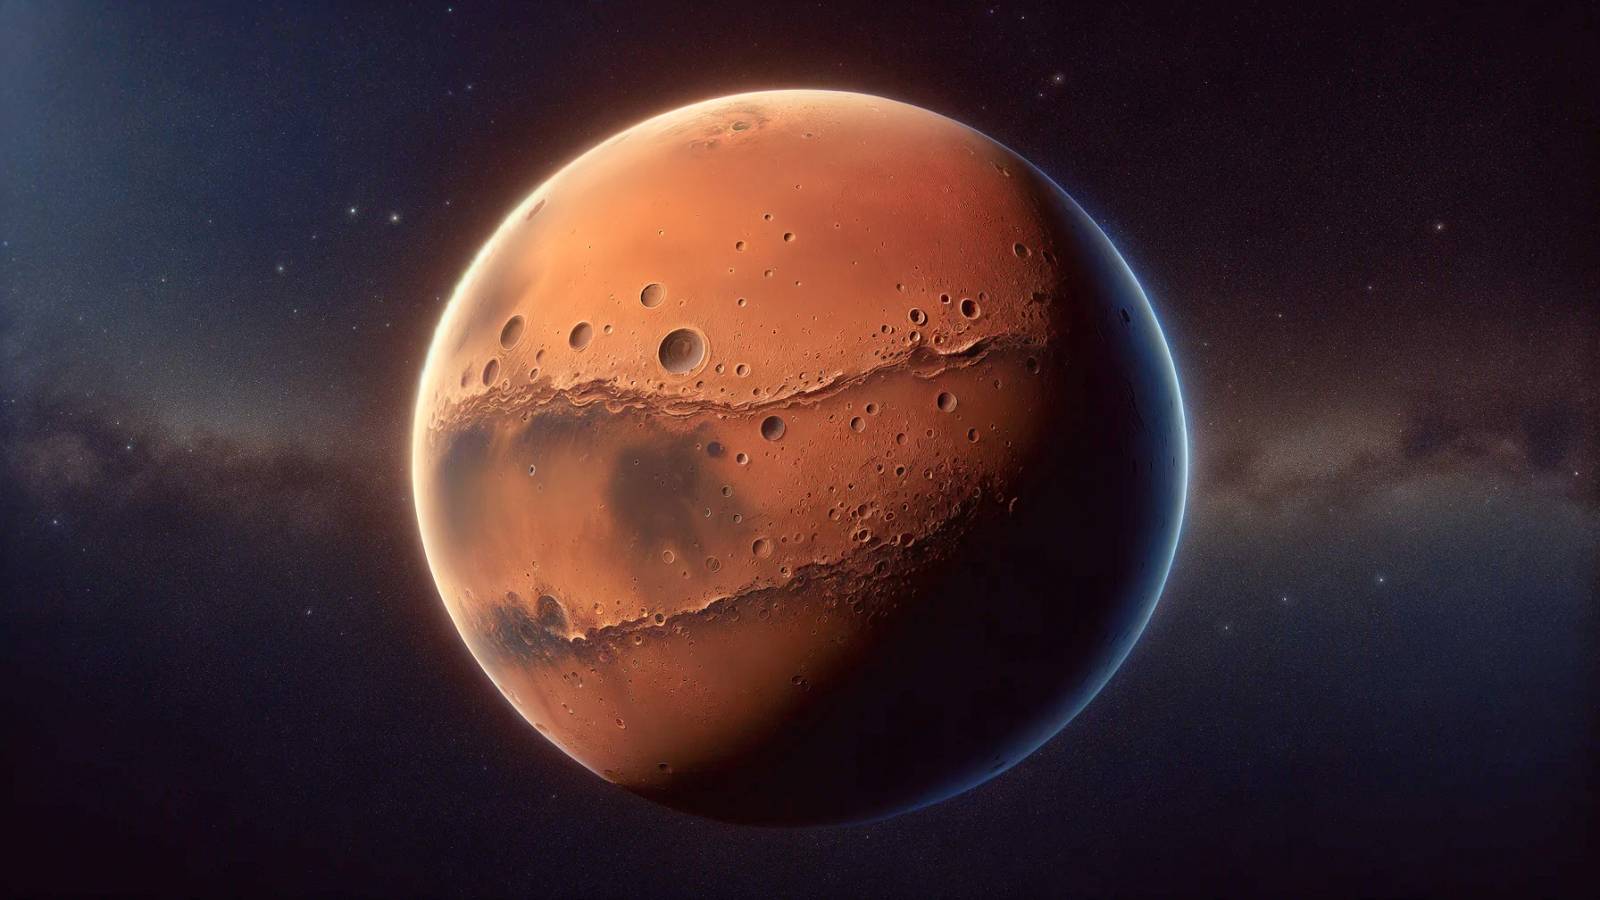 ESA Anunță o Descoperire Incredibilă pe Planeta Marte Mulțumită Sondei Mars Express